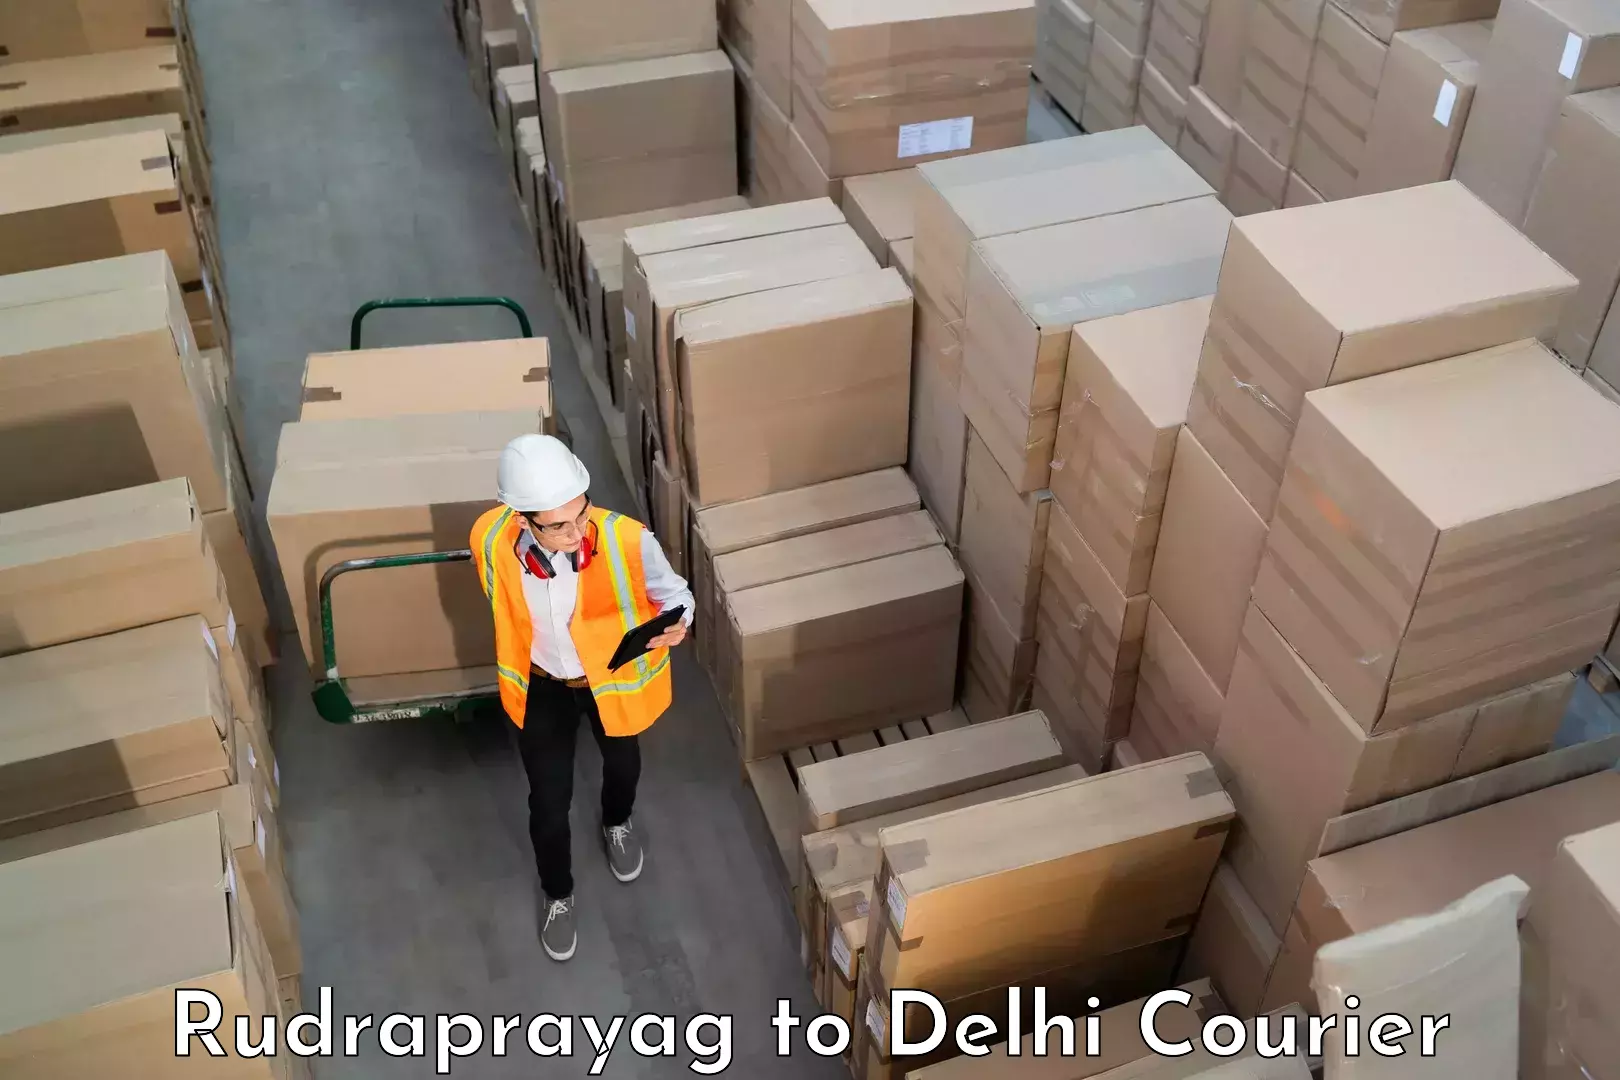 Reliable baggage delivery Rudraprayag to Sarojini Nagar